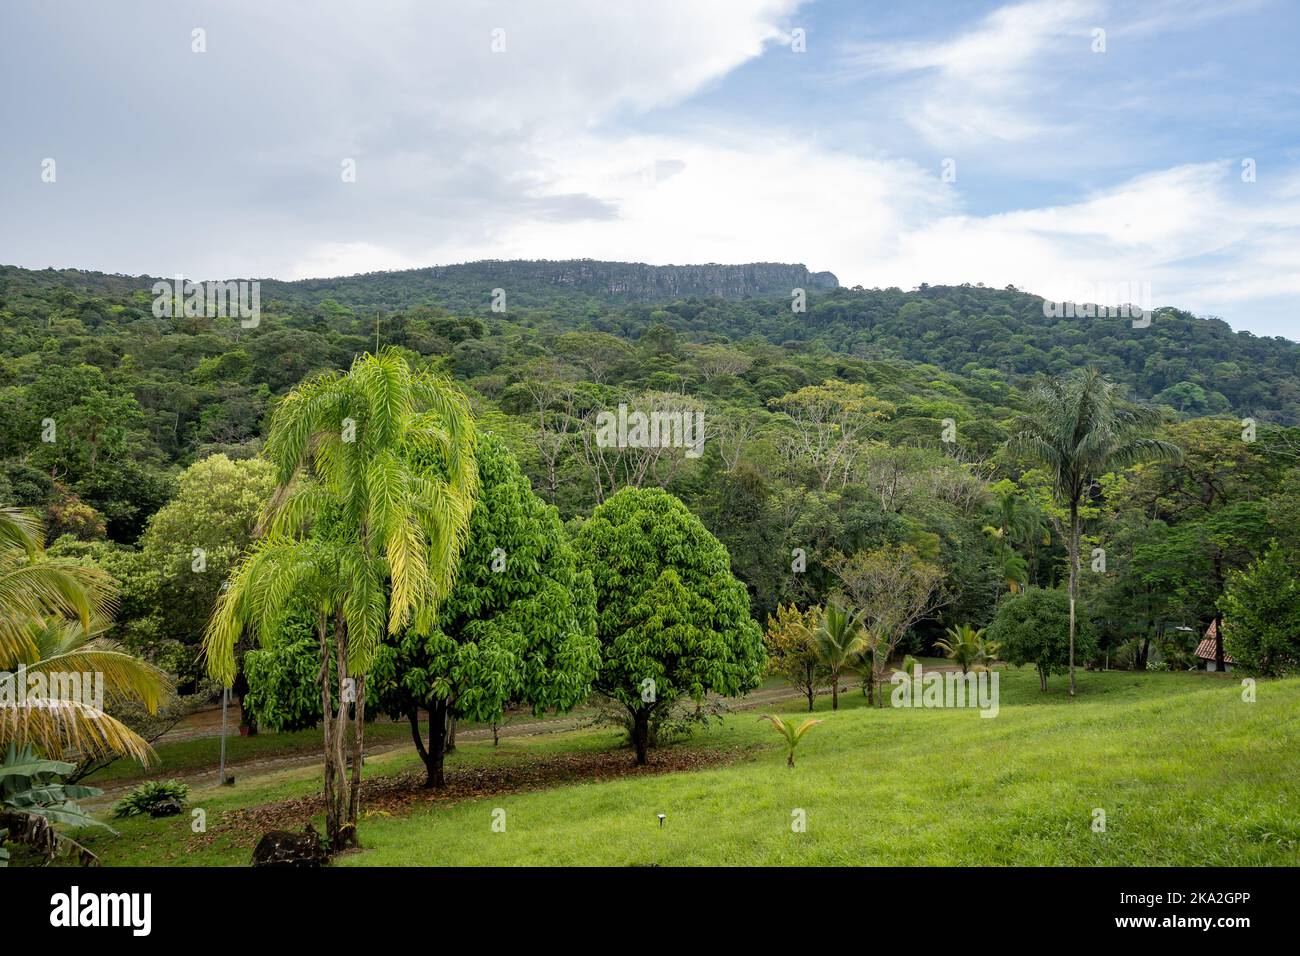 Les montagnes à sommet plat de Tepui se démarquent au-dessus de la forêt tropicale dense. Tepequem, Etat de Roraima, Brésil. Banque D'Images